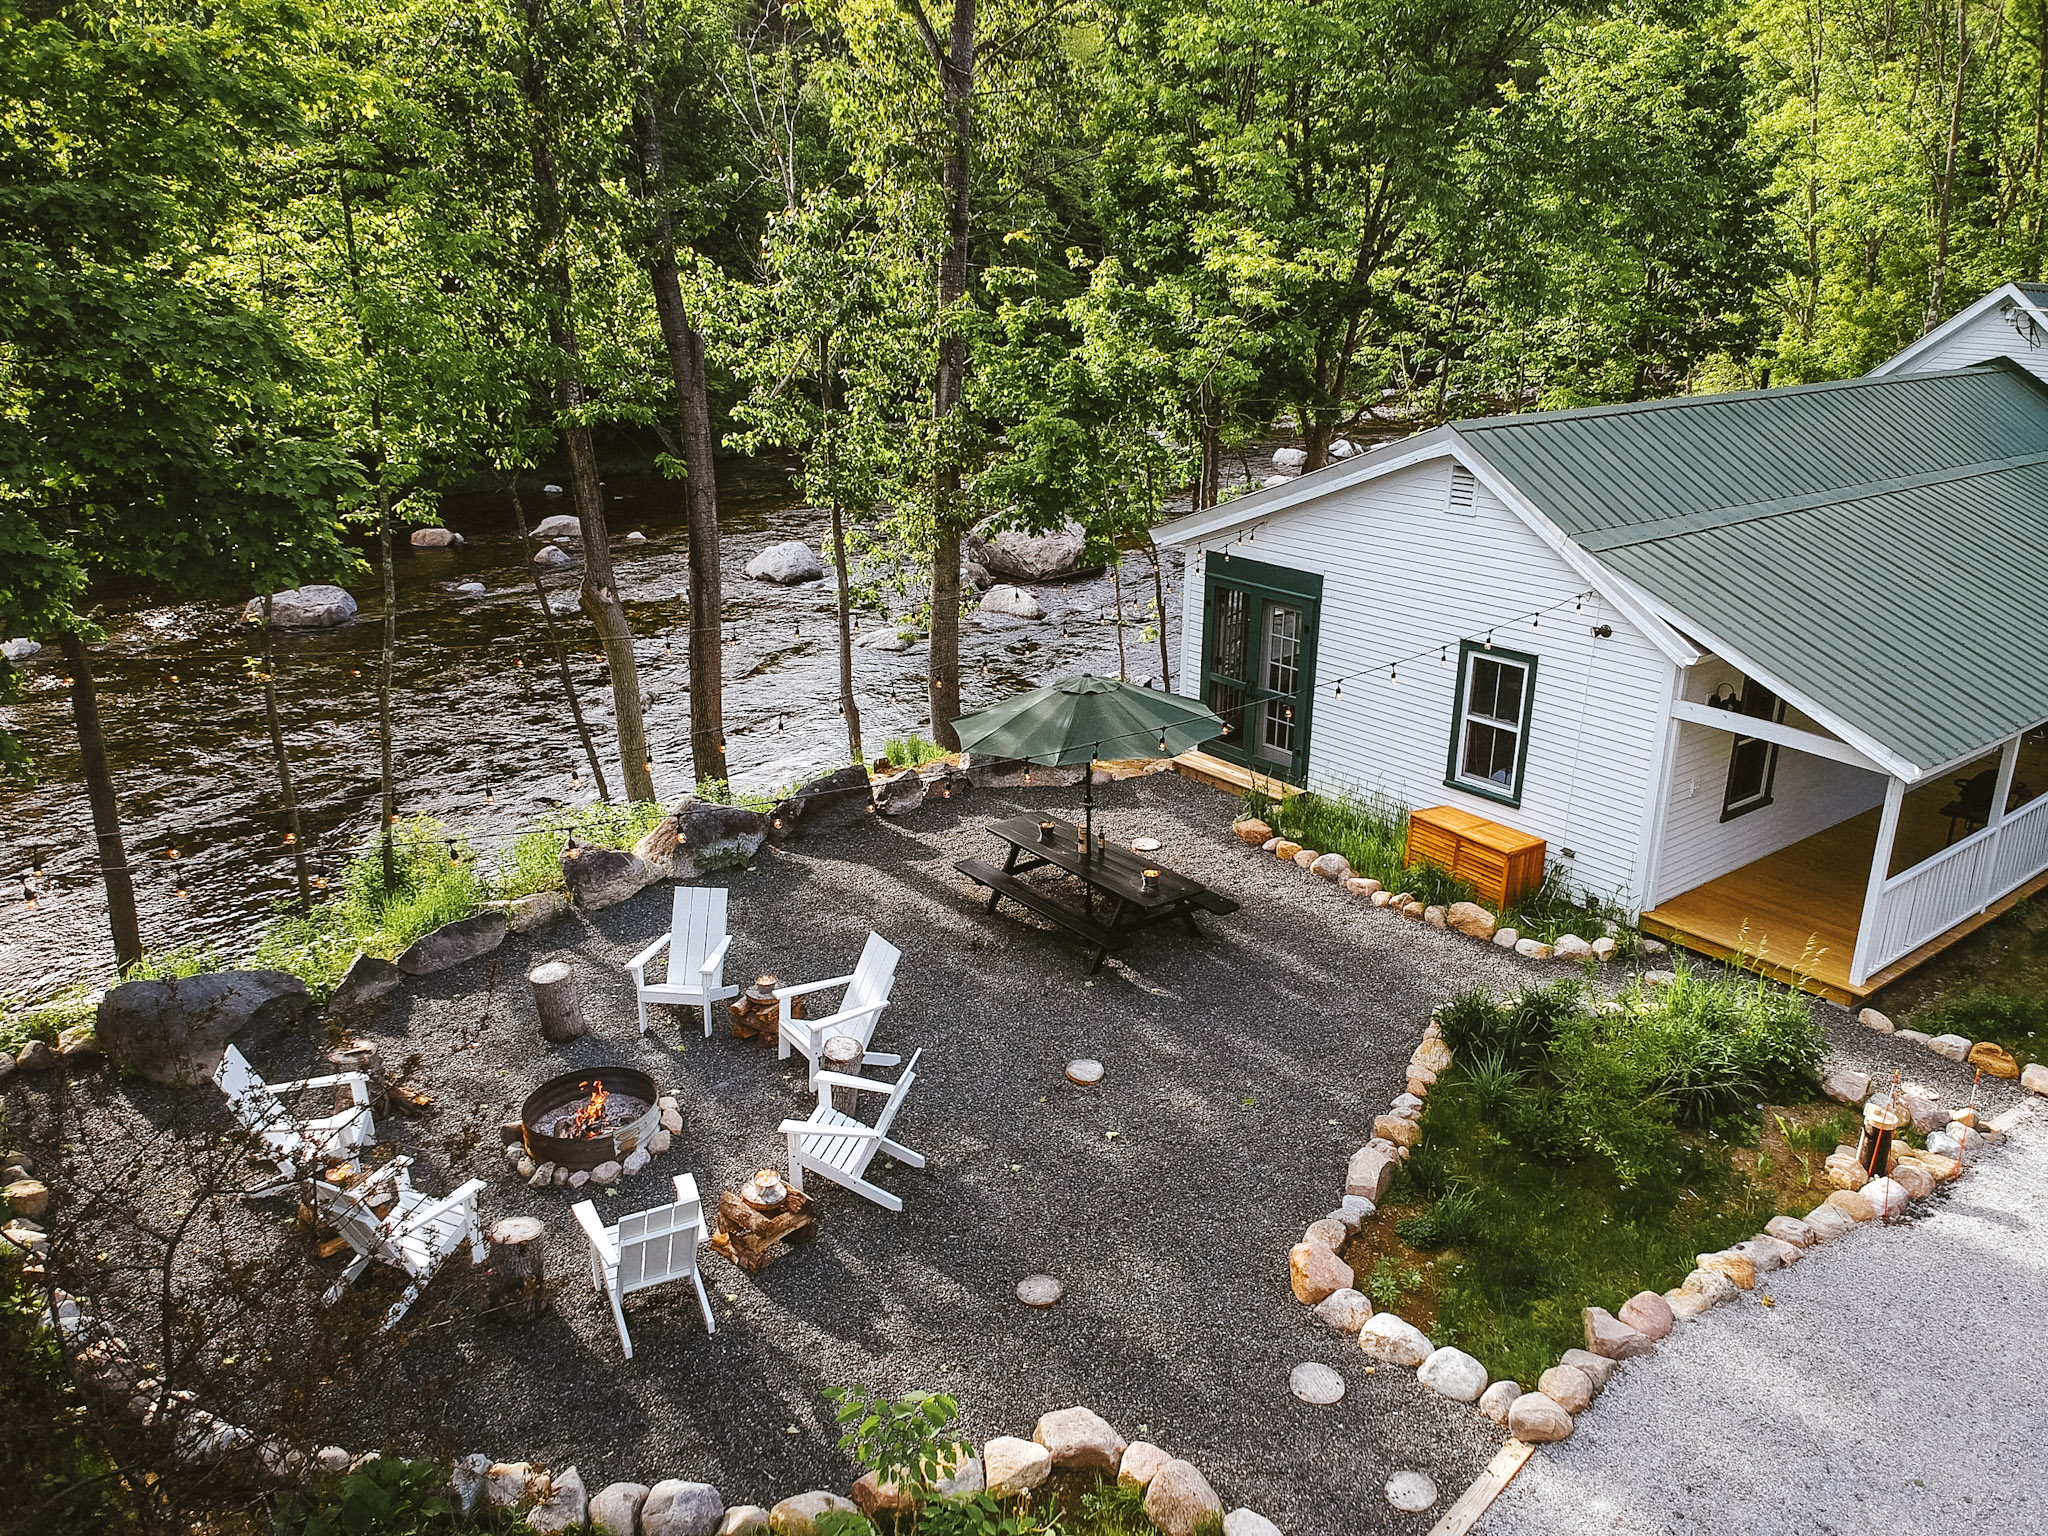 warners camp cabin rental lake placid airbnb adirondacks